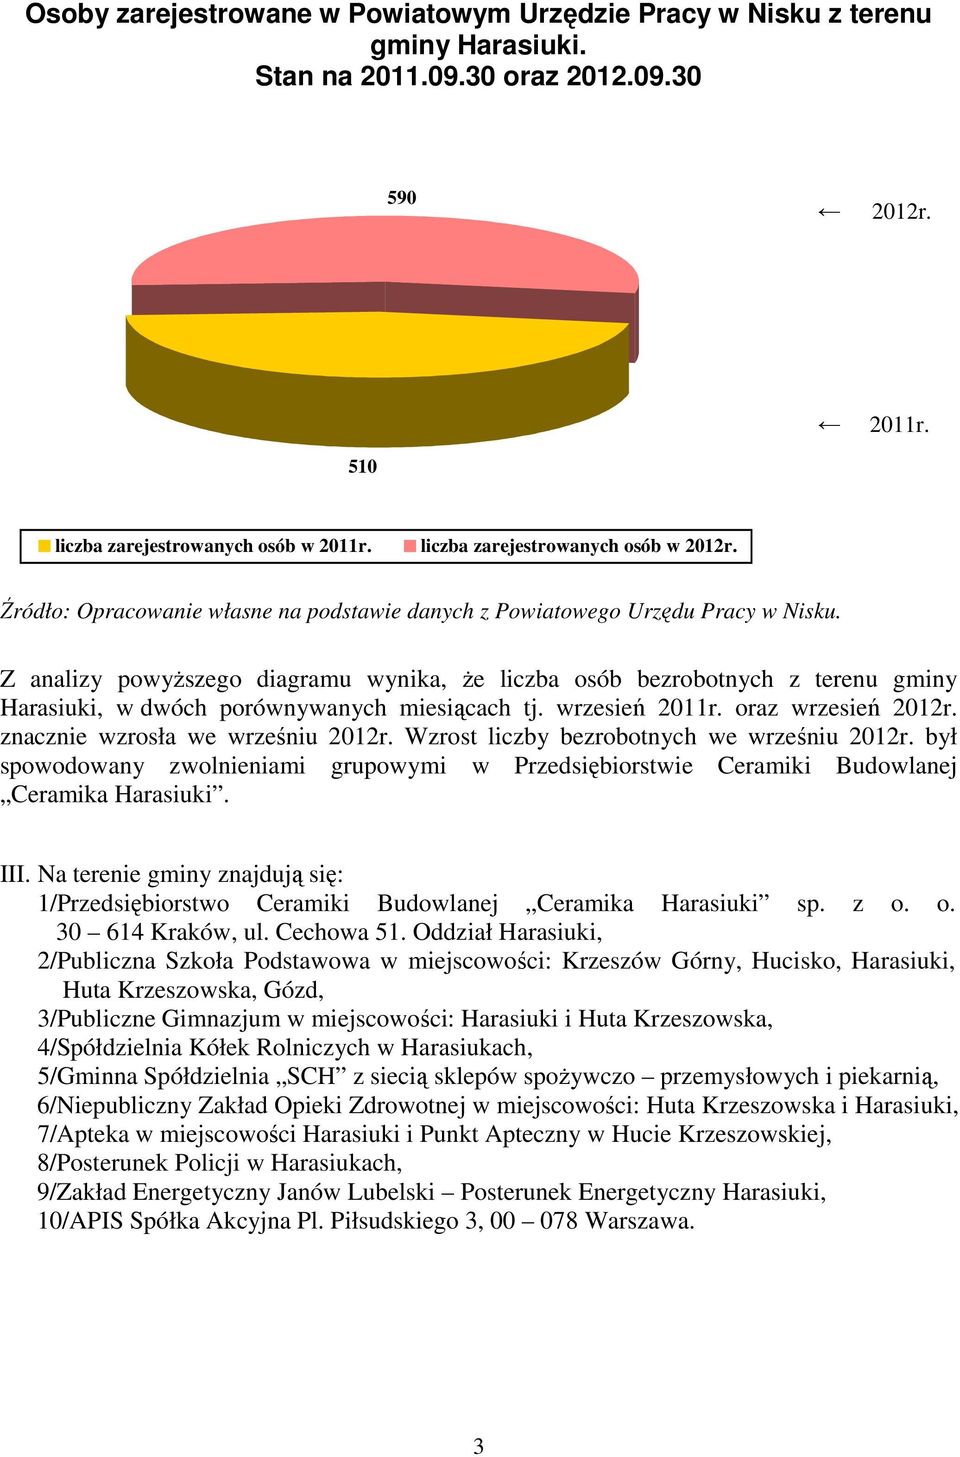 Z analizy powyższego diagramu wynika, że liczba osób bezrobotnych z terenu gminy Harasiuki, w dwóch porównywanych miesiącach tj. wrzesień 2011r. oraz wrzesień 2012r.